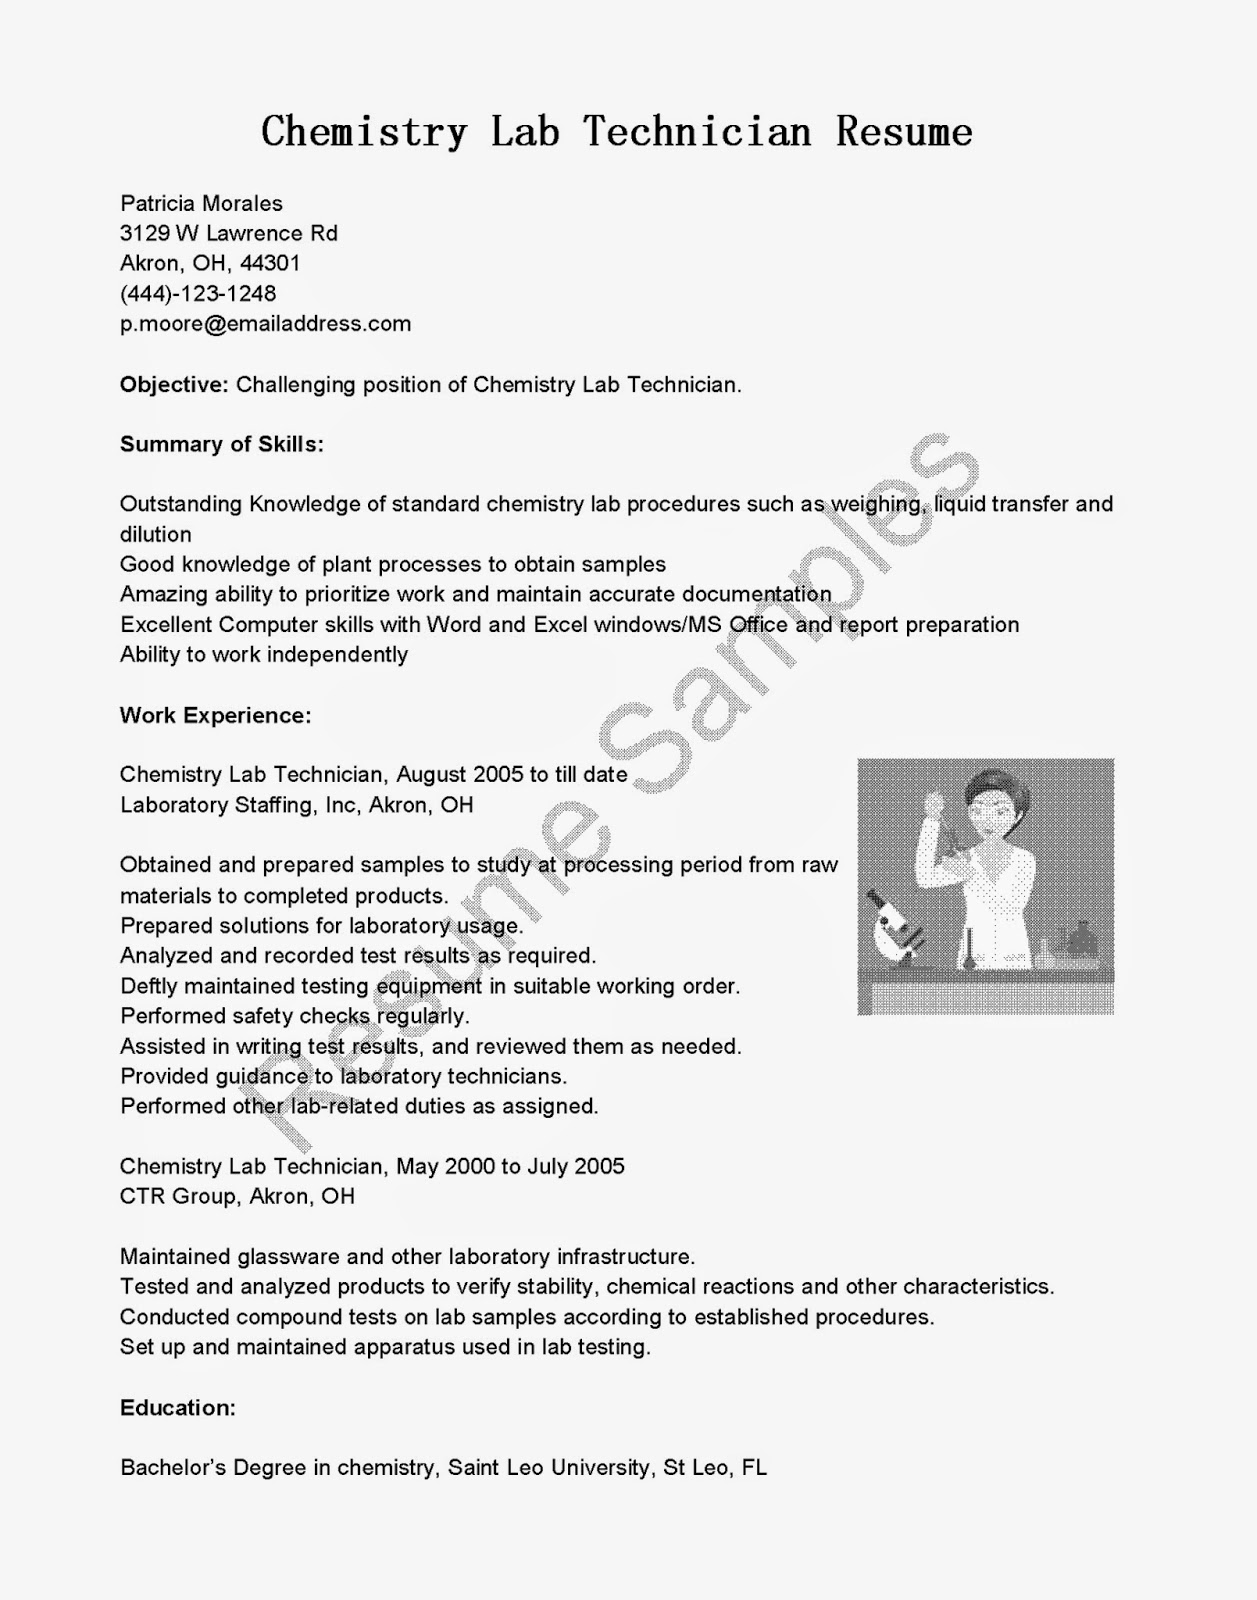 Mechanic job letter resume